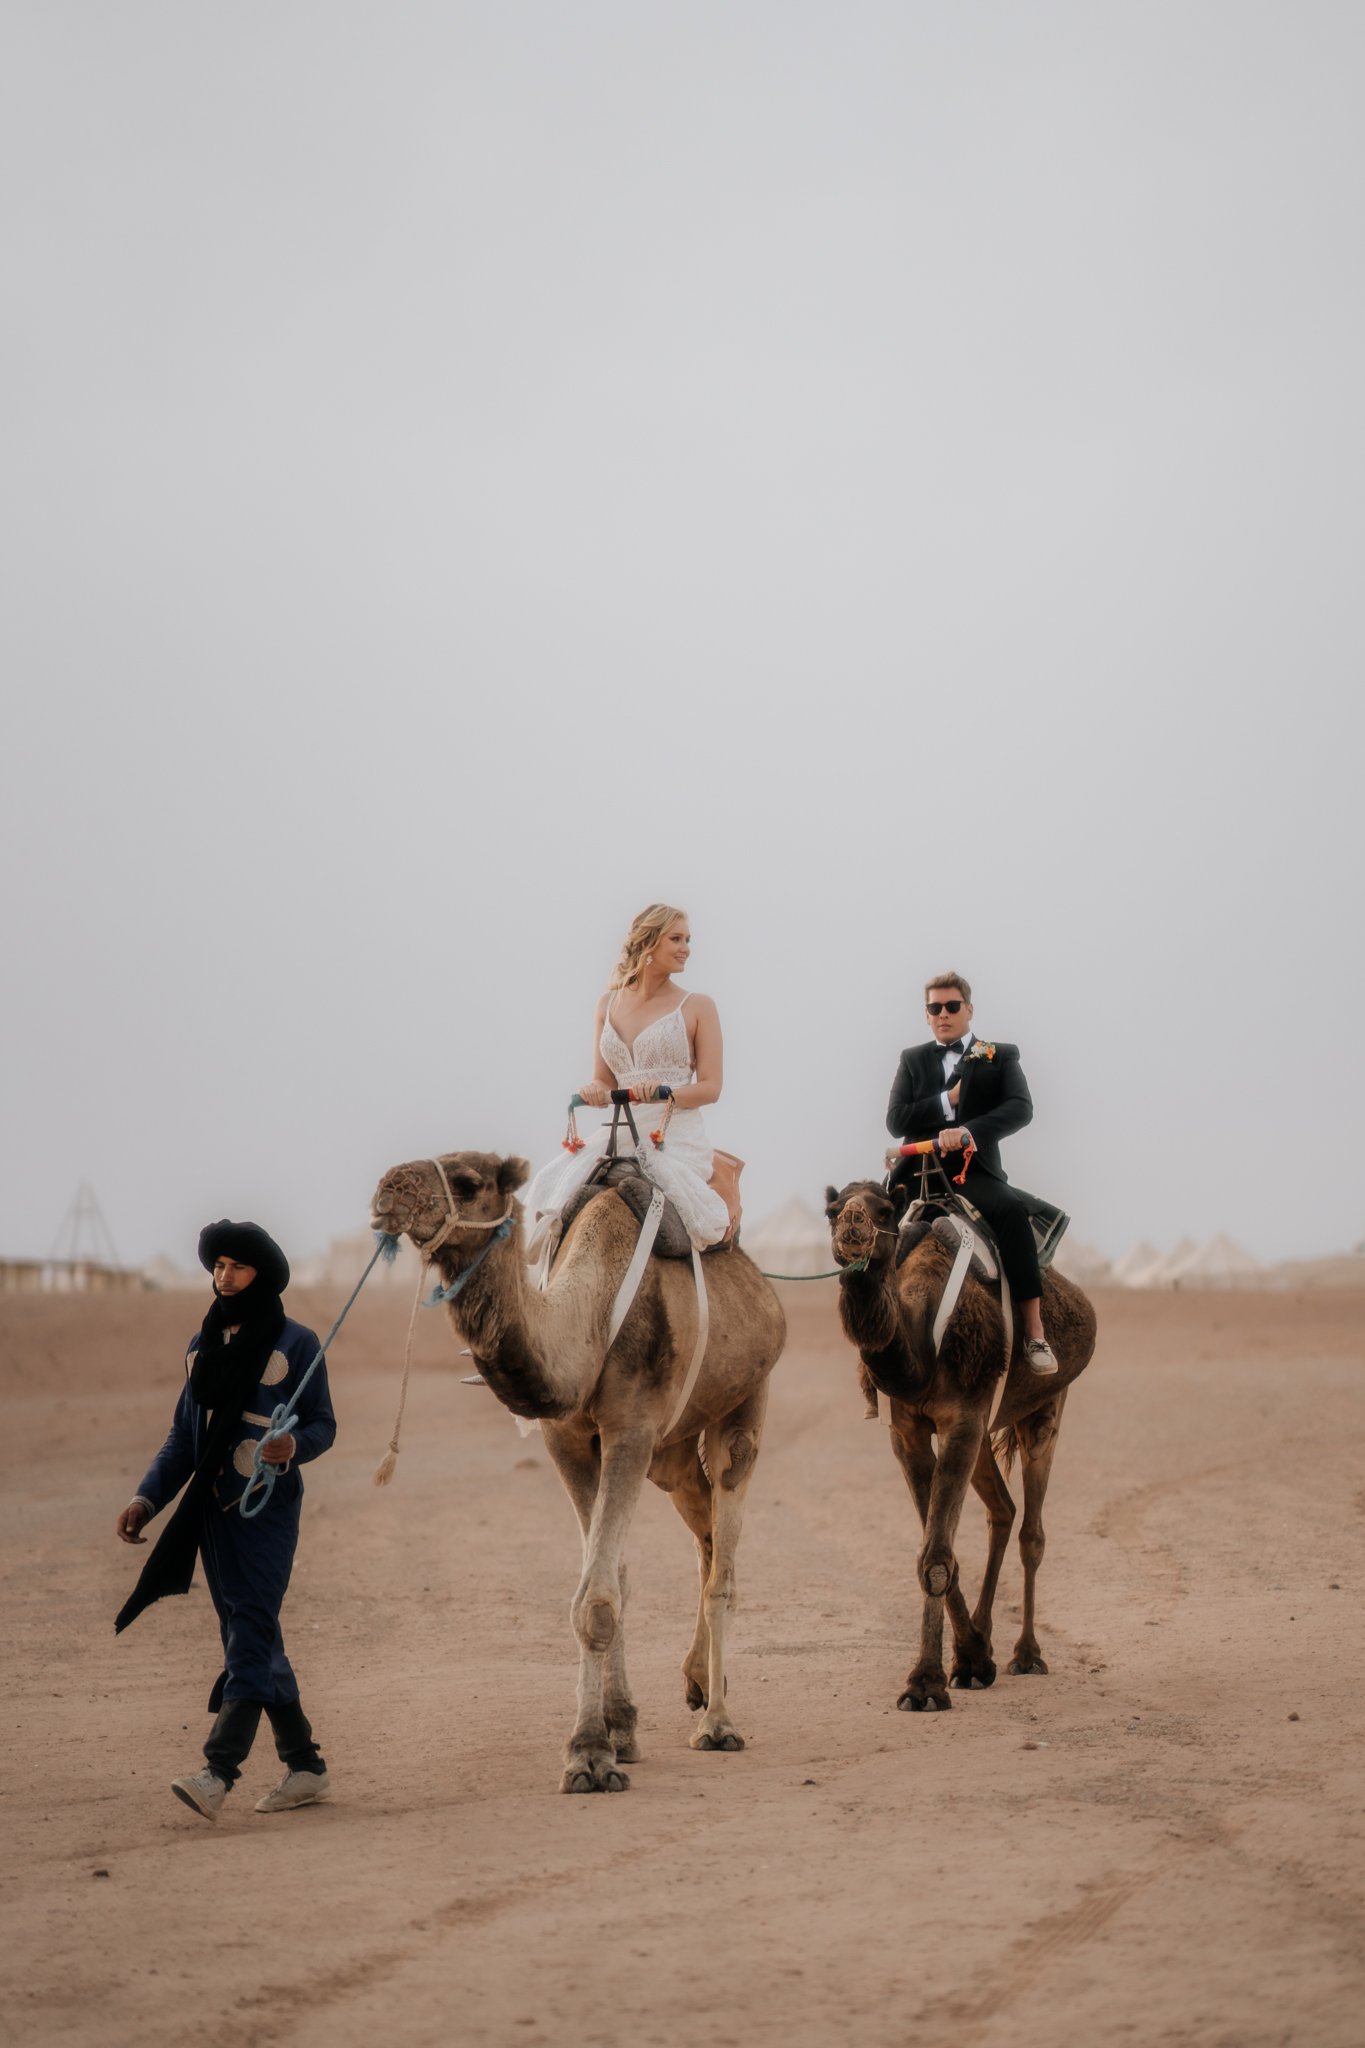 Morocco wedding photographer and videographer